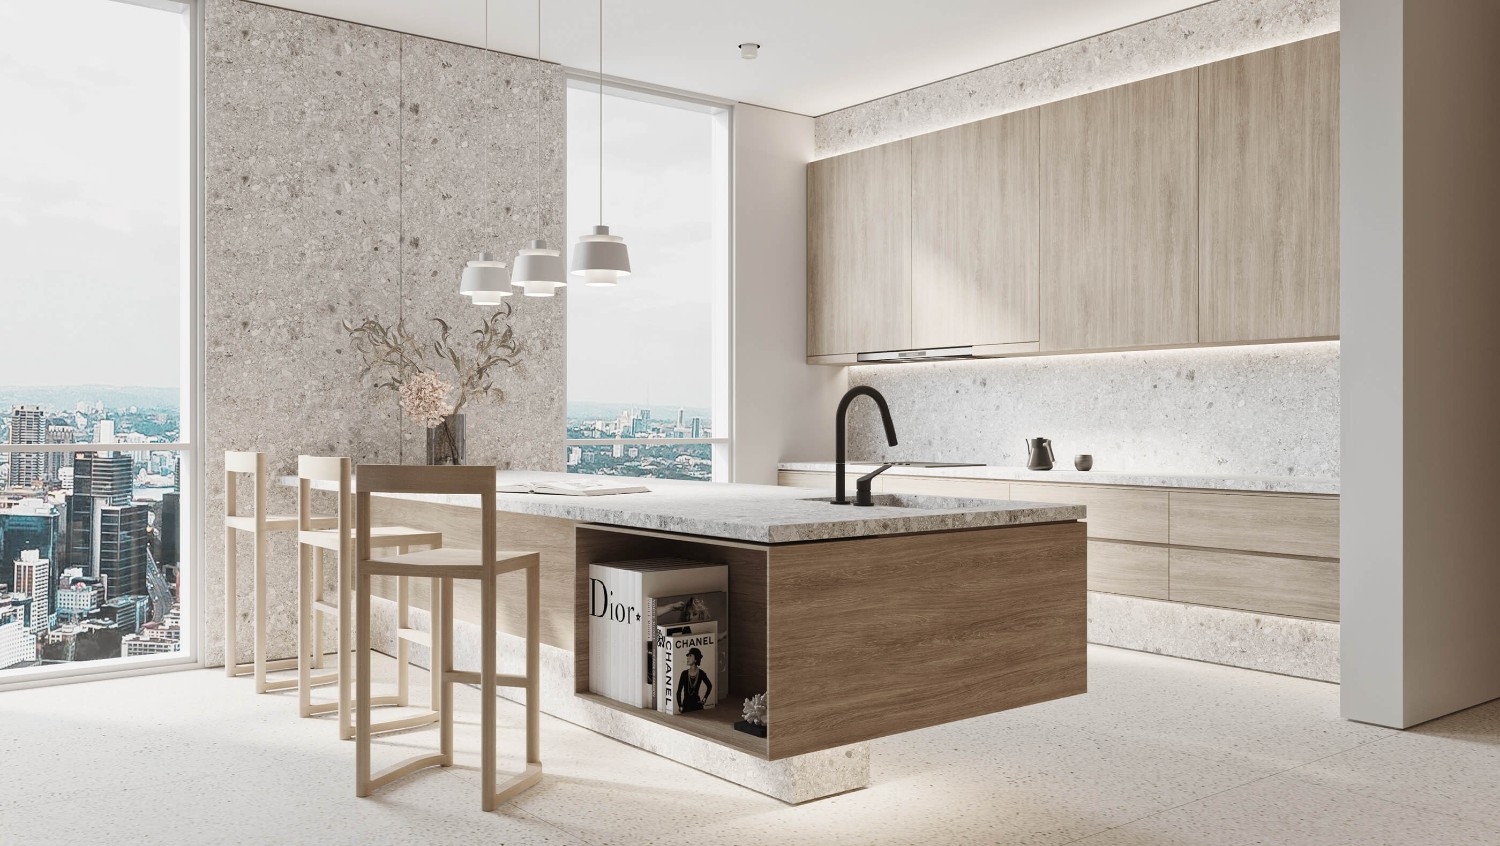 Thiết kế tủ bếp căn hộ Bình Thạnh 2020